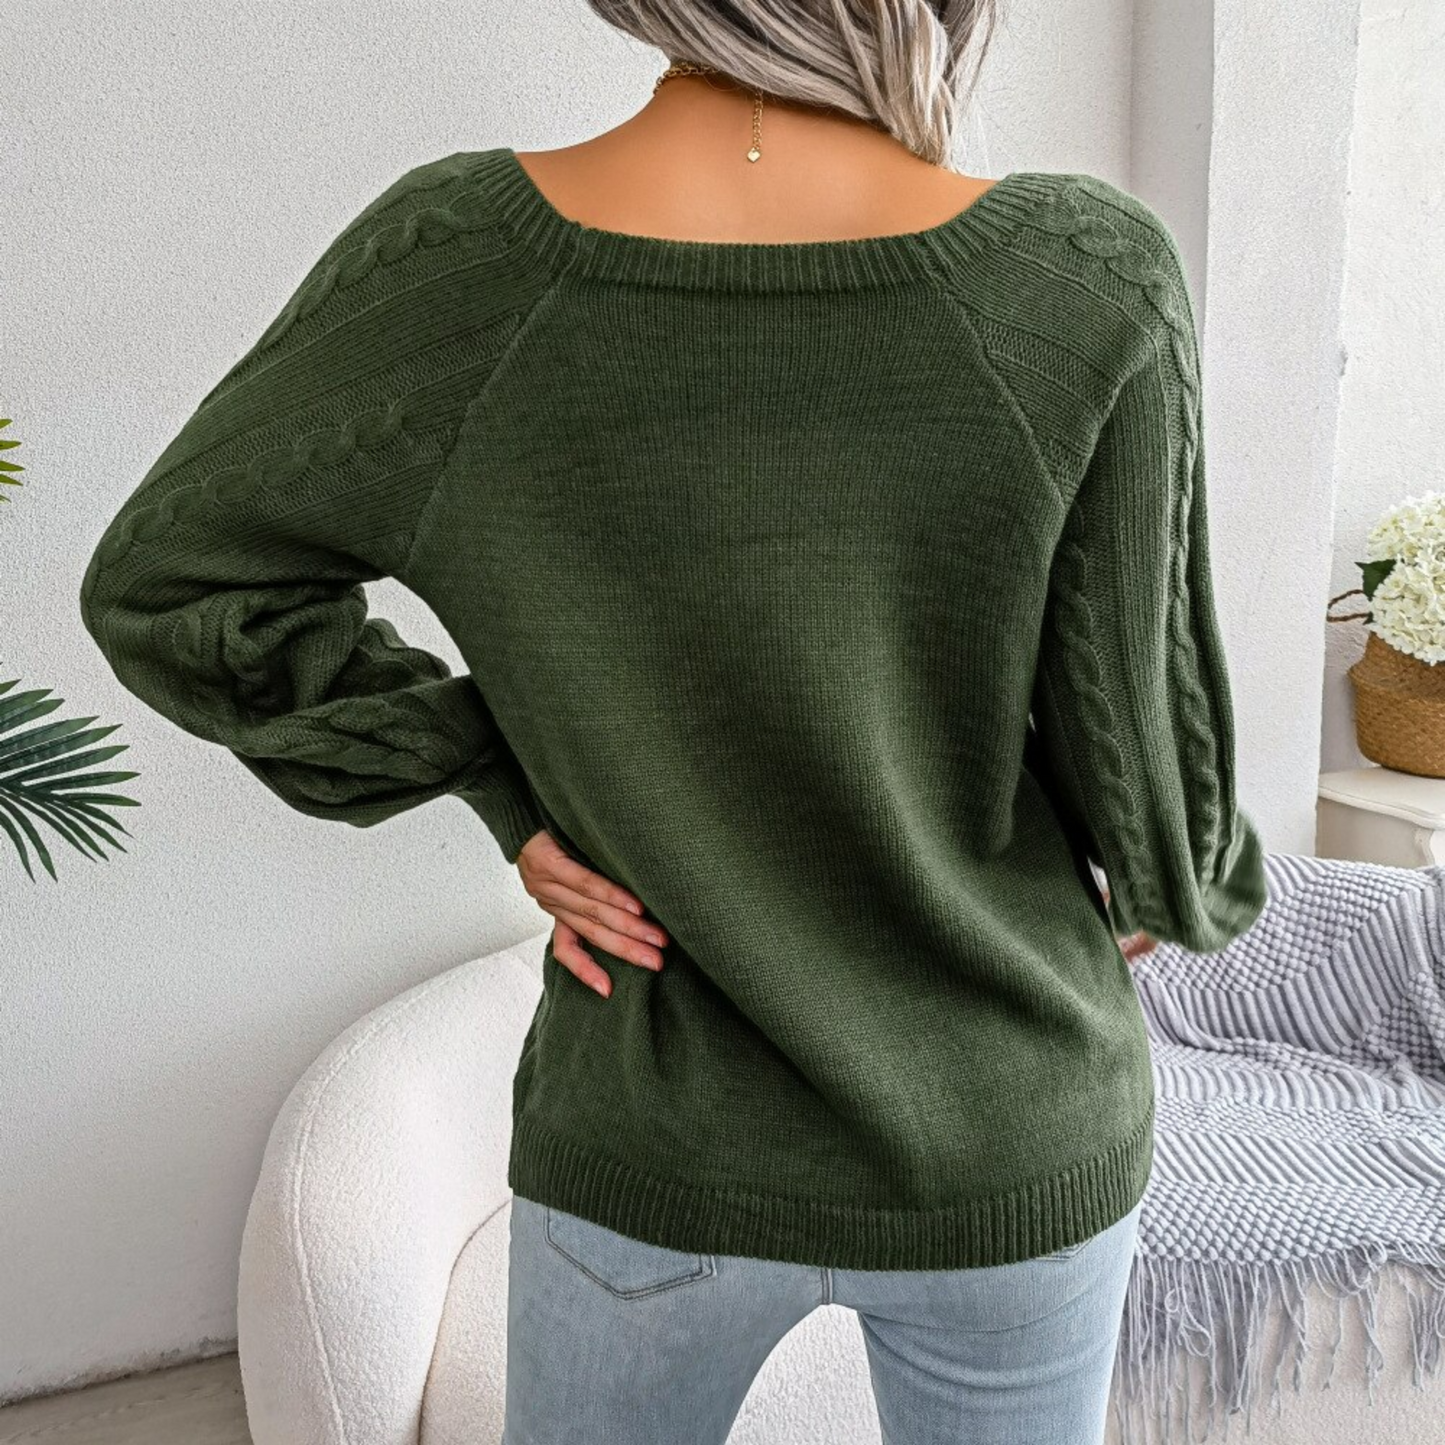 Sofia - Green Square Neck Pullover Sweater Top